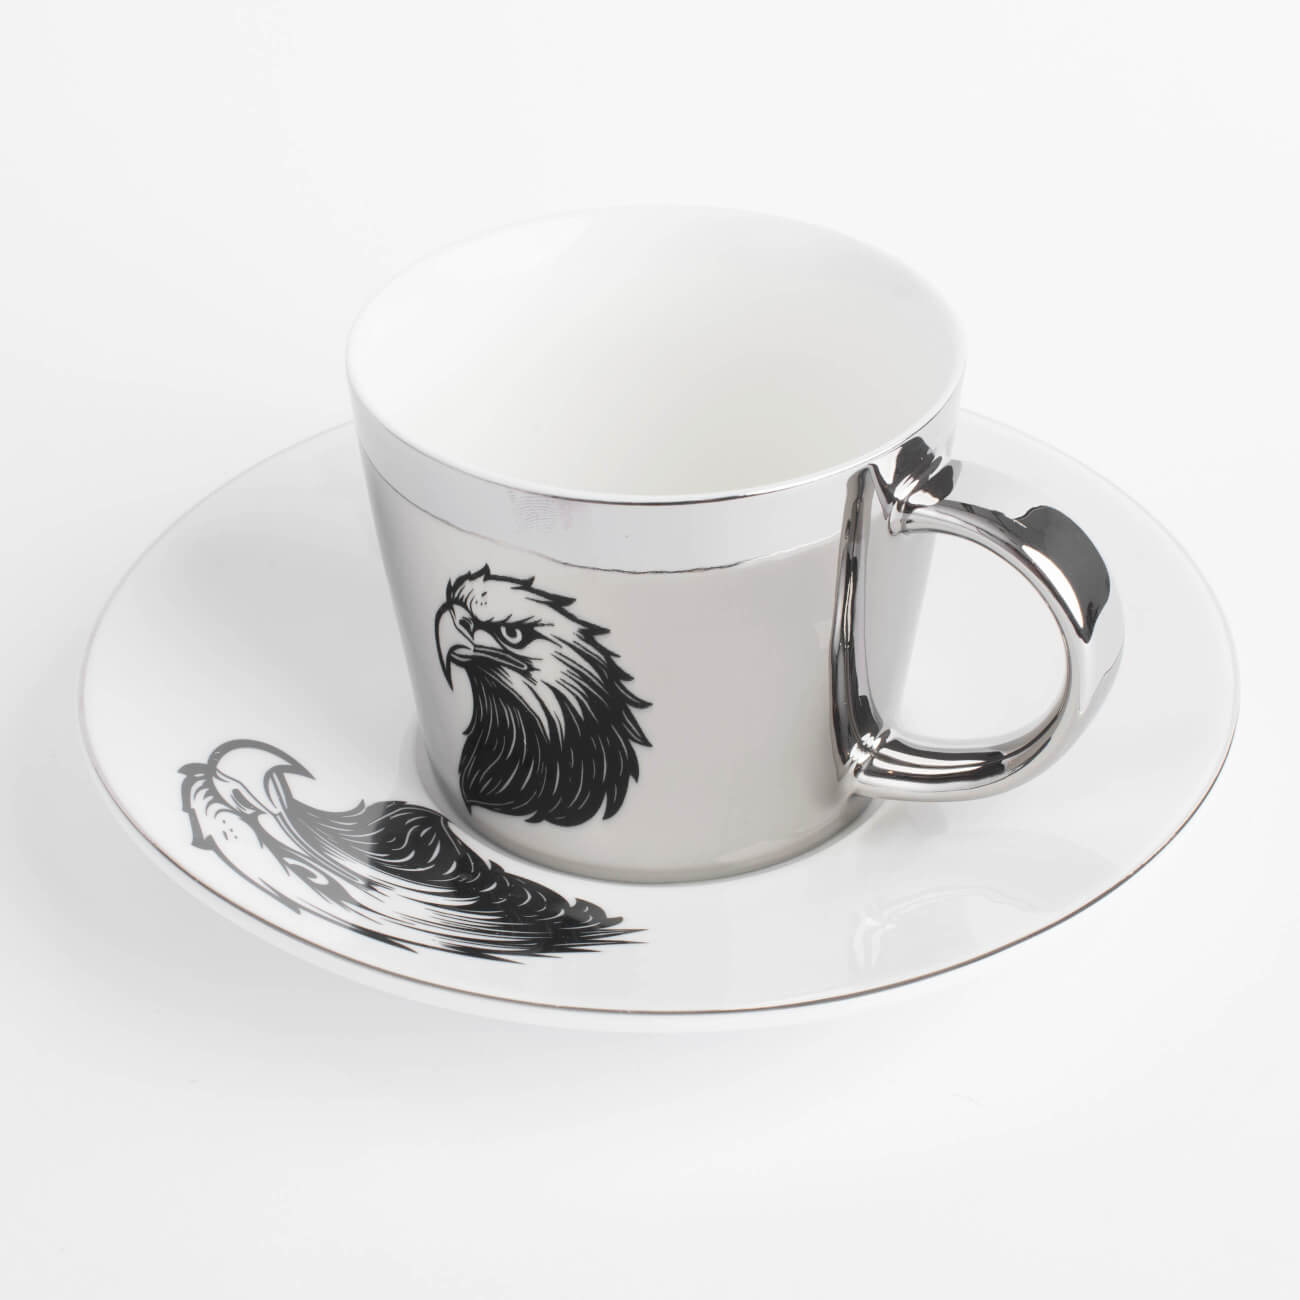 Пара чайная, 1 перс, 2 пр, 230 мл, фарфор P, бело-серебристая, Орел, Eagle портрет звери ные орел большой 72 5 х 40 см